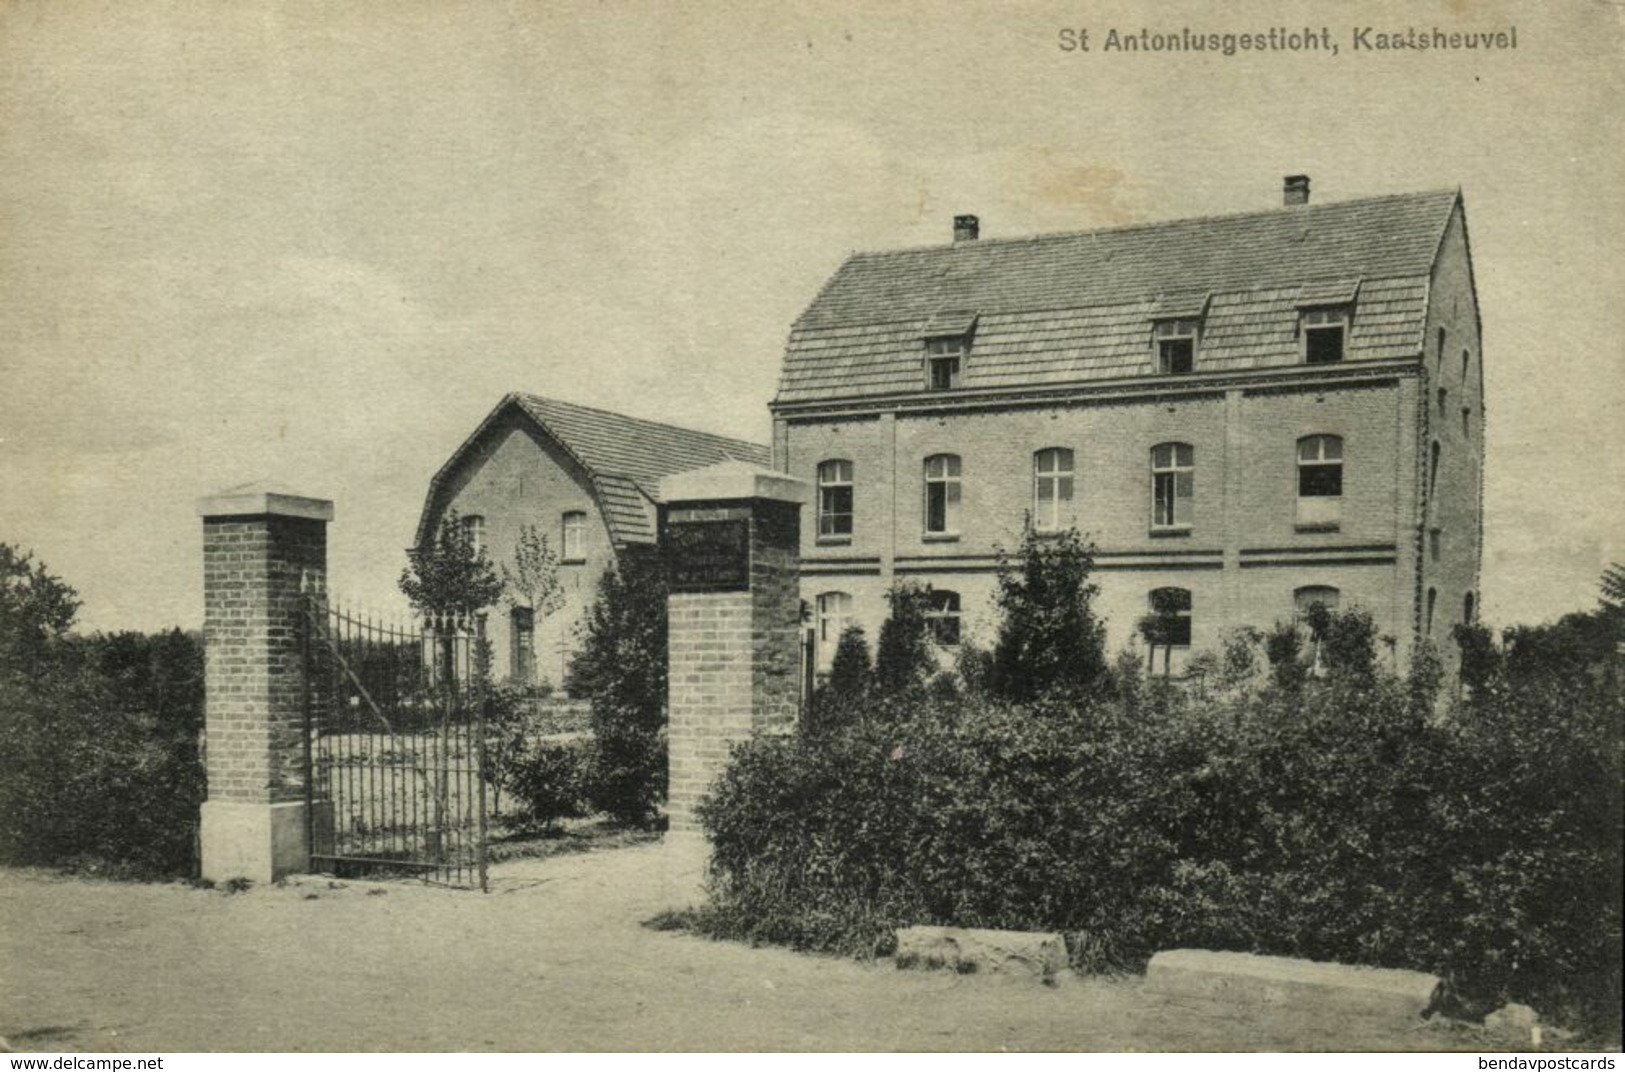 Nederland, KAATSHEUVEL, St. Anthoniusgesticht (1910s) Ansichtkaart - Kaatsheuvel